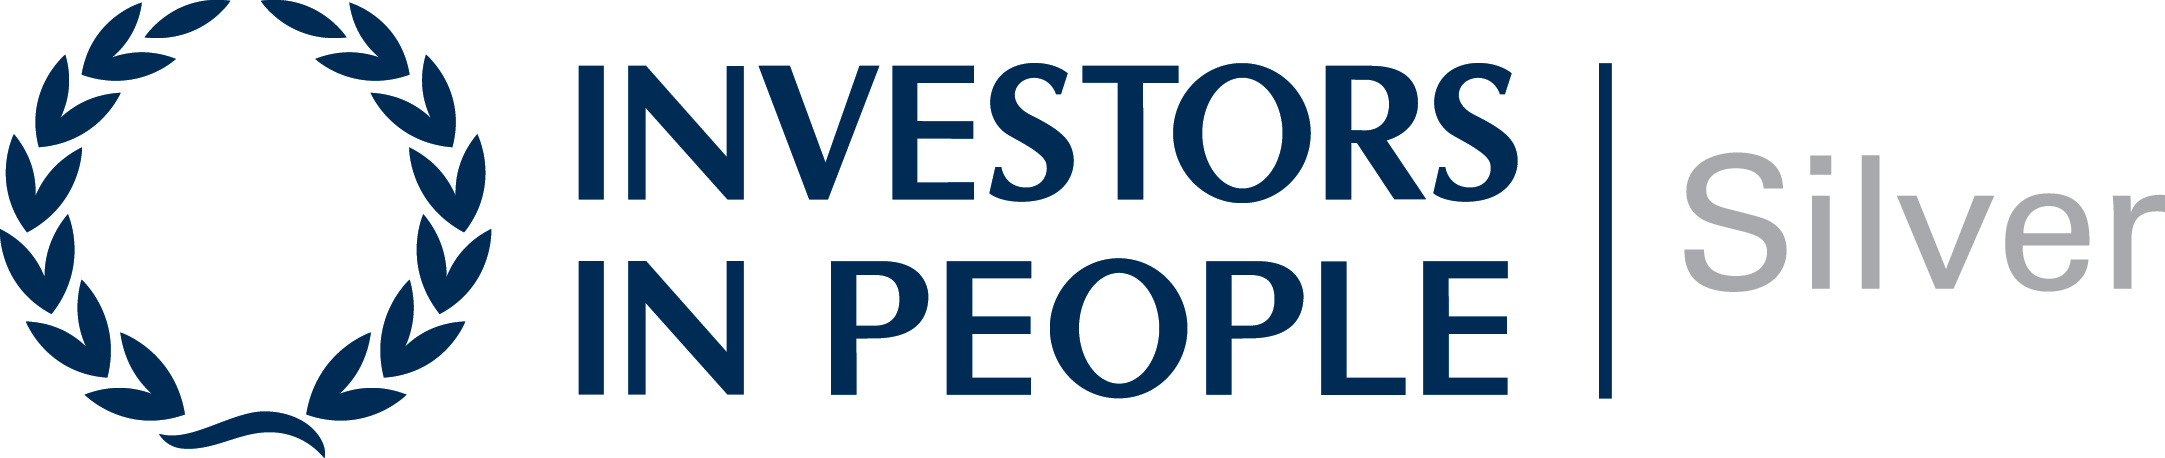 Investors in People Silver award logo